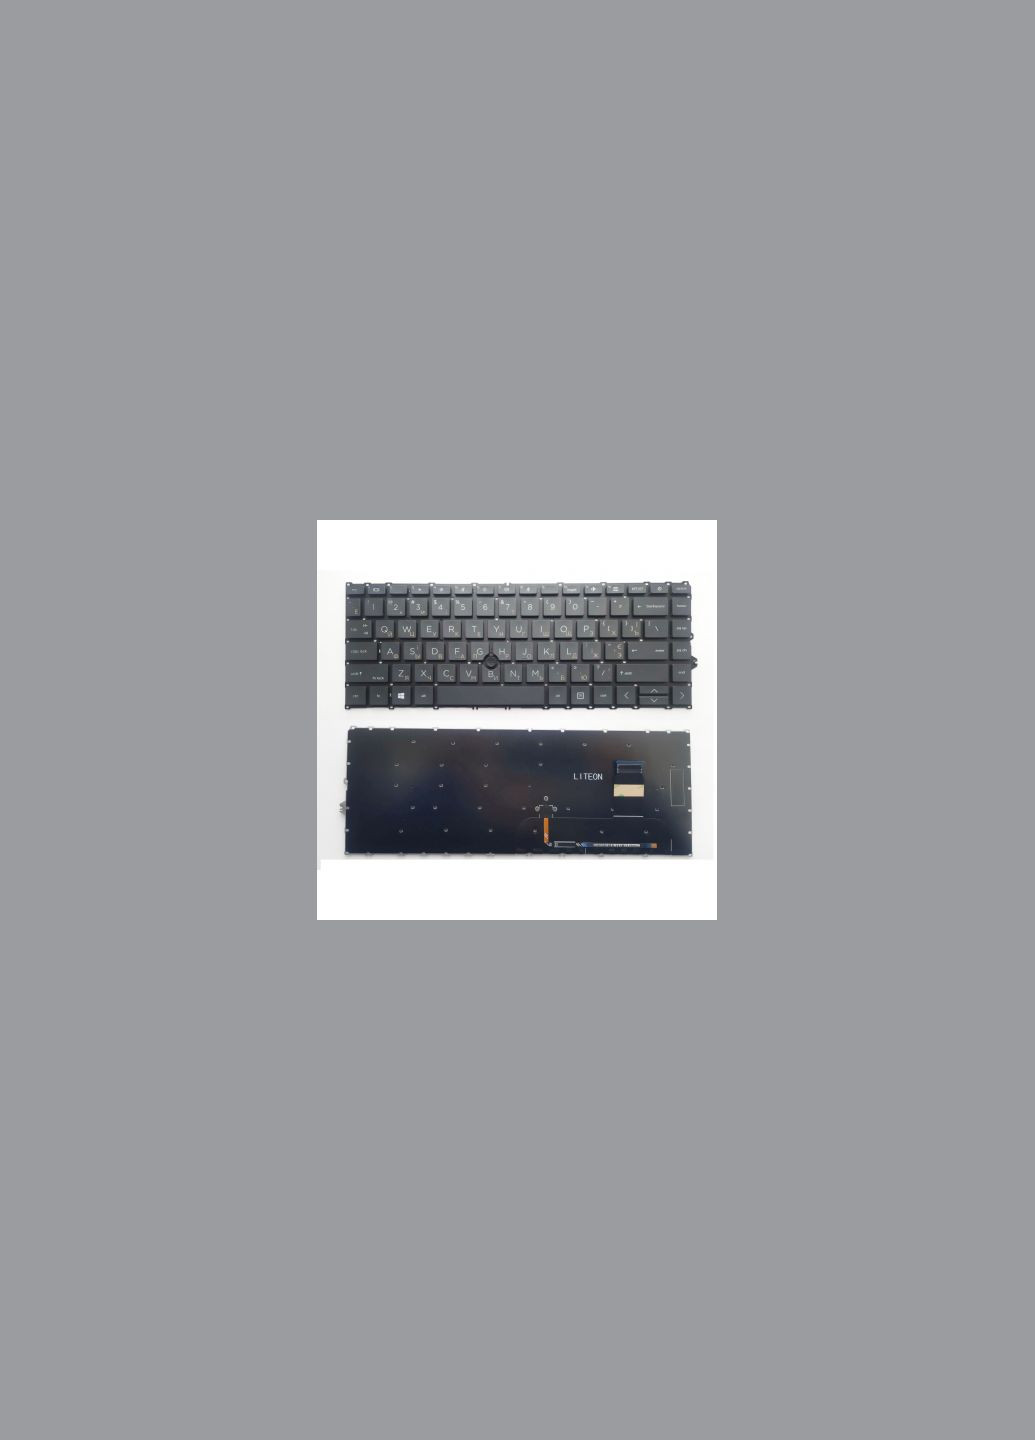 Клавиатура ноутбука EliteBook 745 G7/G8, 840 G7/G8 черна з ТП UA (A46209) HP elitebook 745 g7/g8, 840 g7/g8 черна з тп ua (278368781)